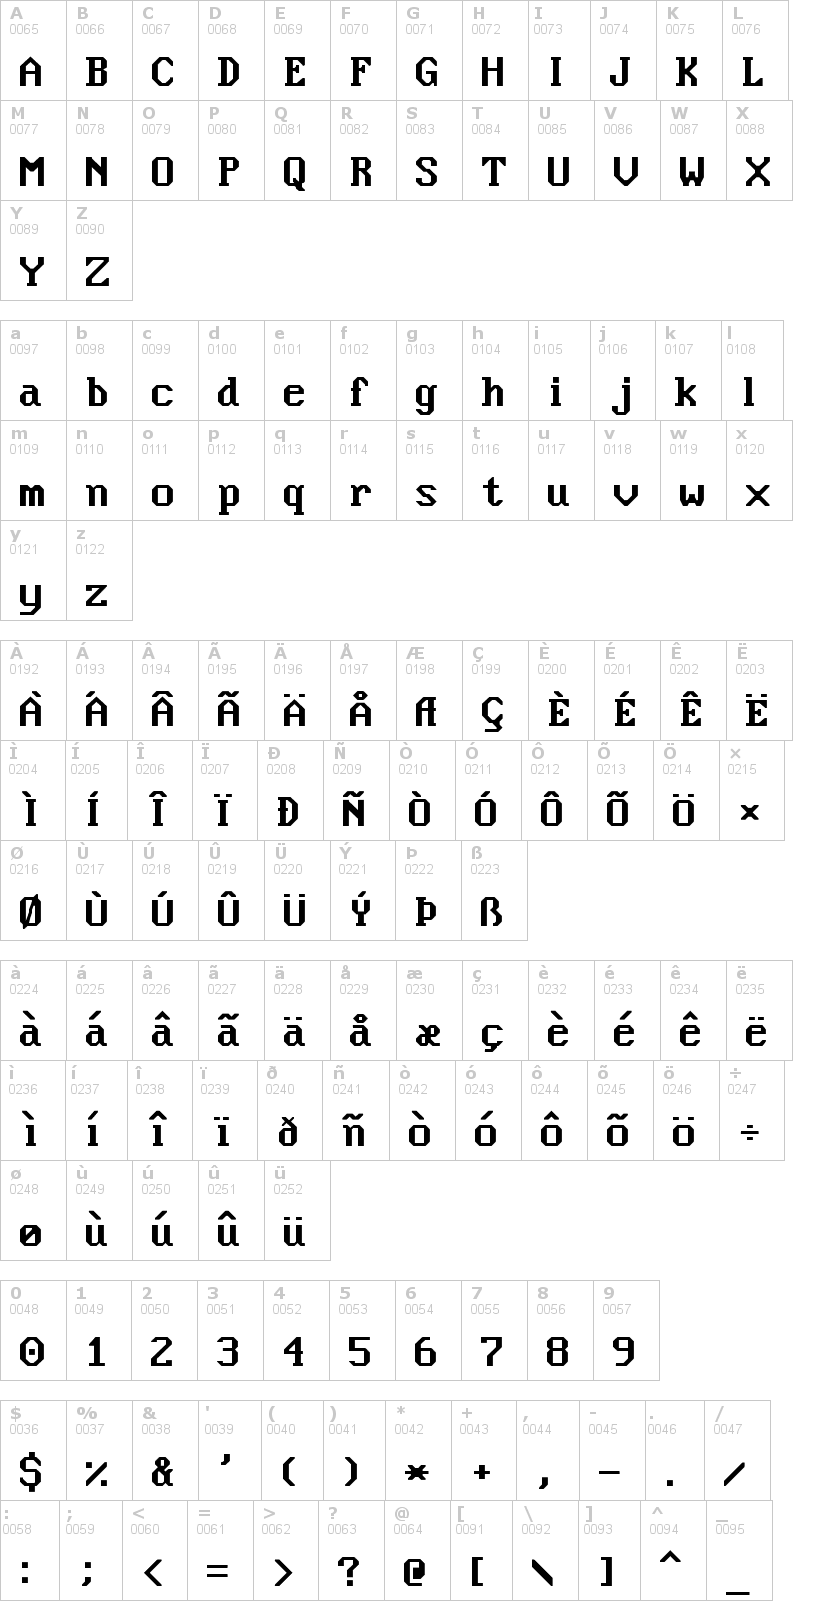 Lettere dell'alfabeto del font nouveau-ibm con le quali è possibile realizzare adesivi prespaziati